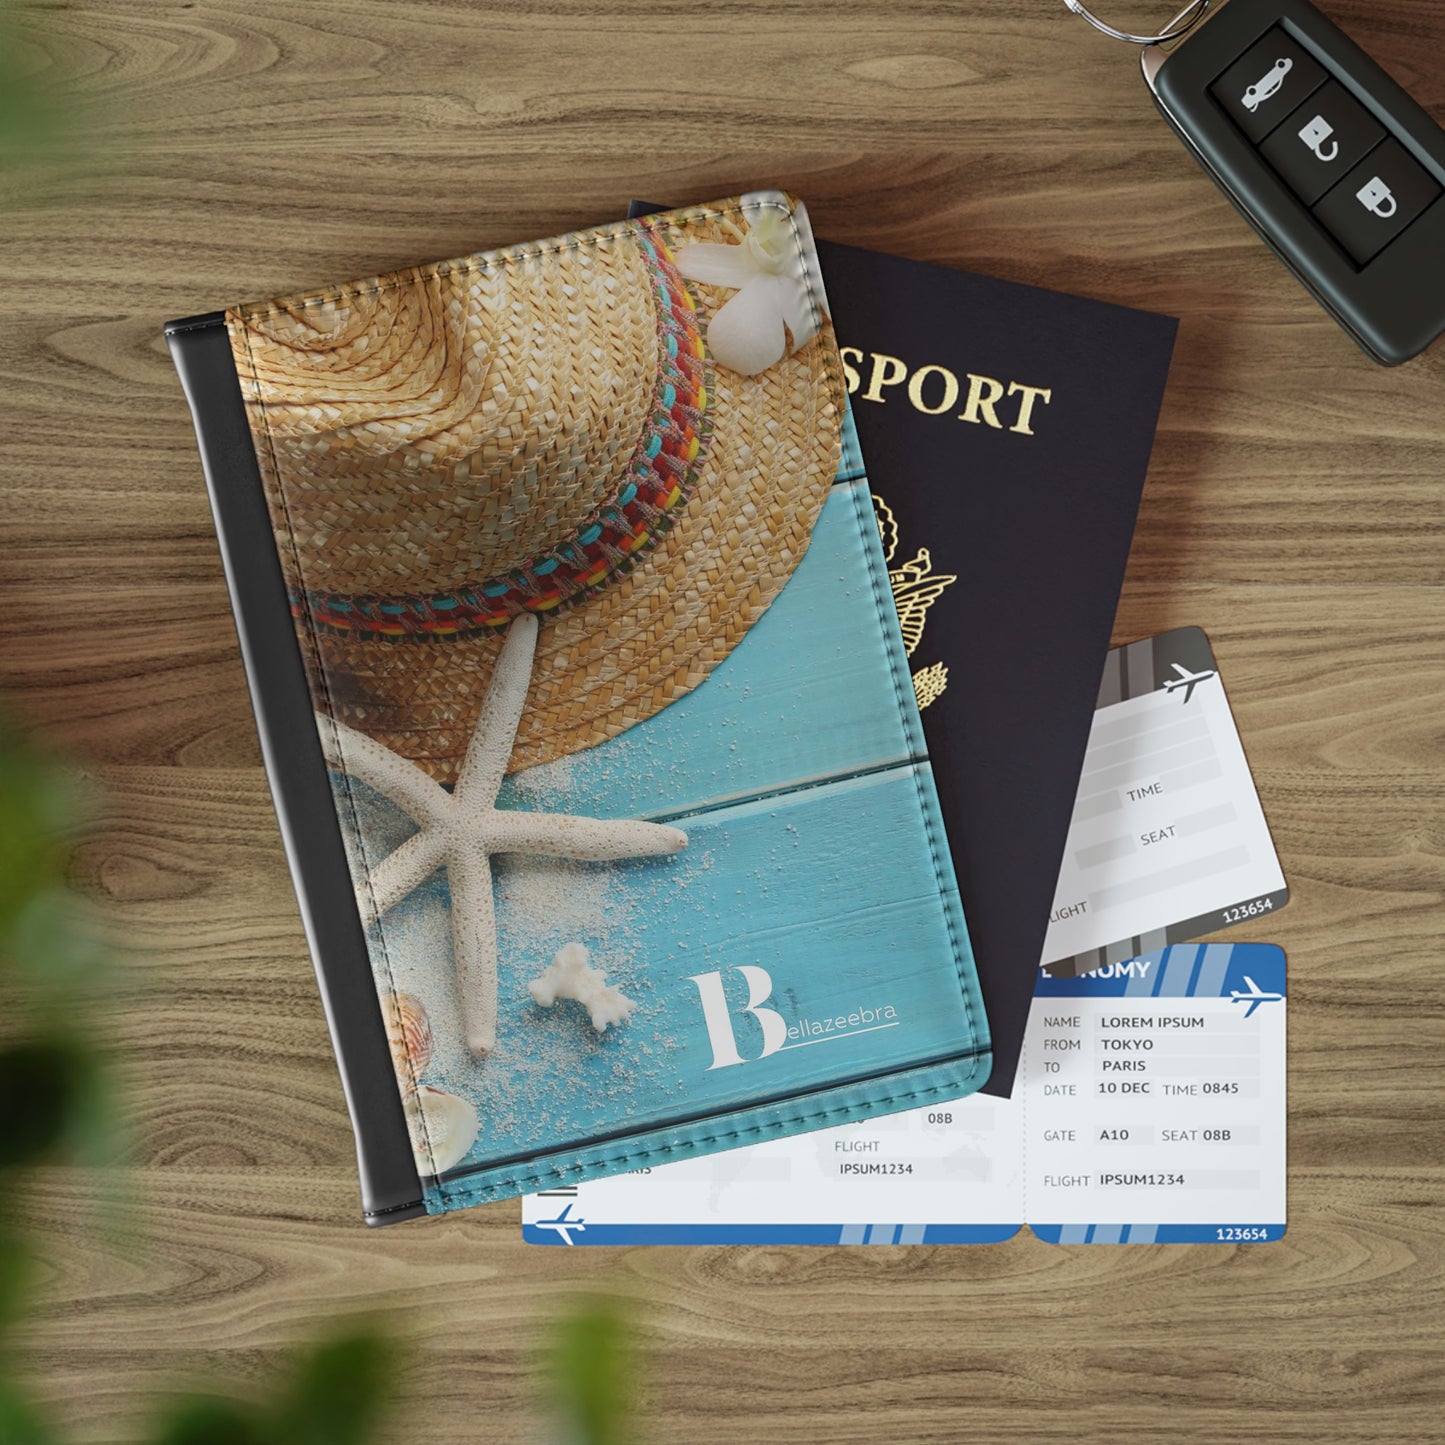 BELLAZEEBRA Passport Cover with summer hat and starfish